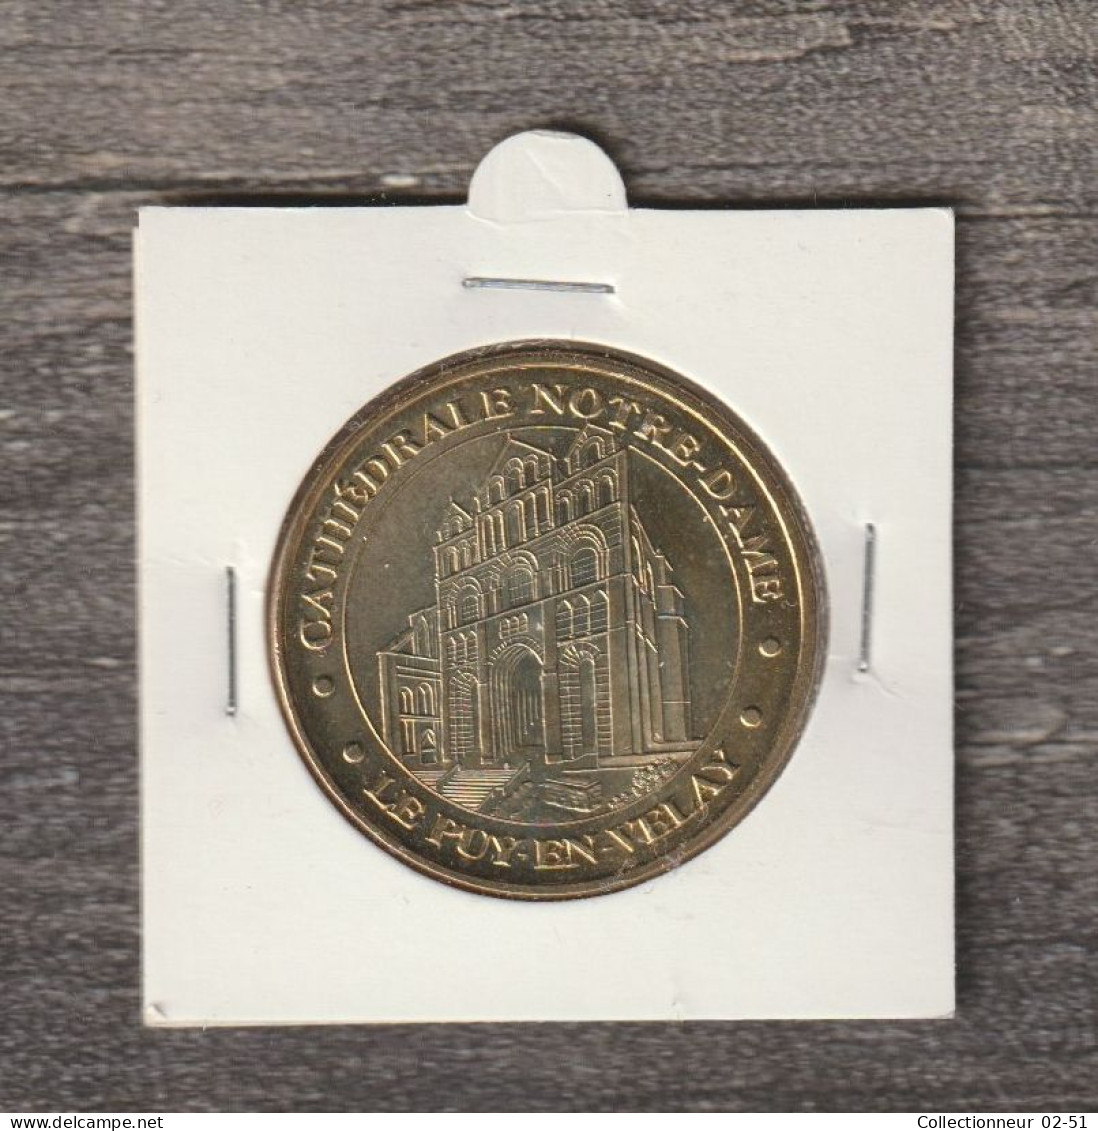 Monnaie De Paris : Cathédrale Notre-Dame (Le Puy-en-Velay) - 2012 - 2012